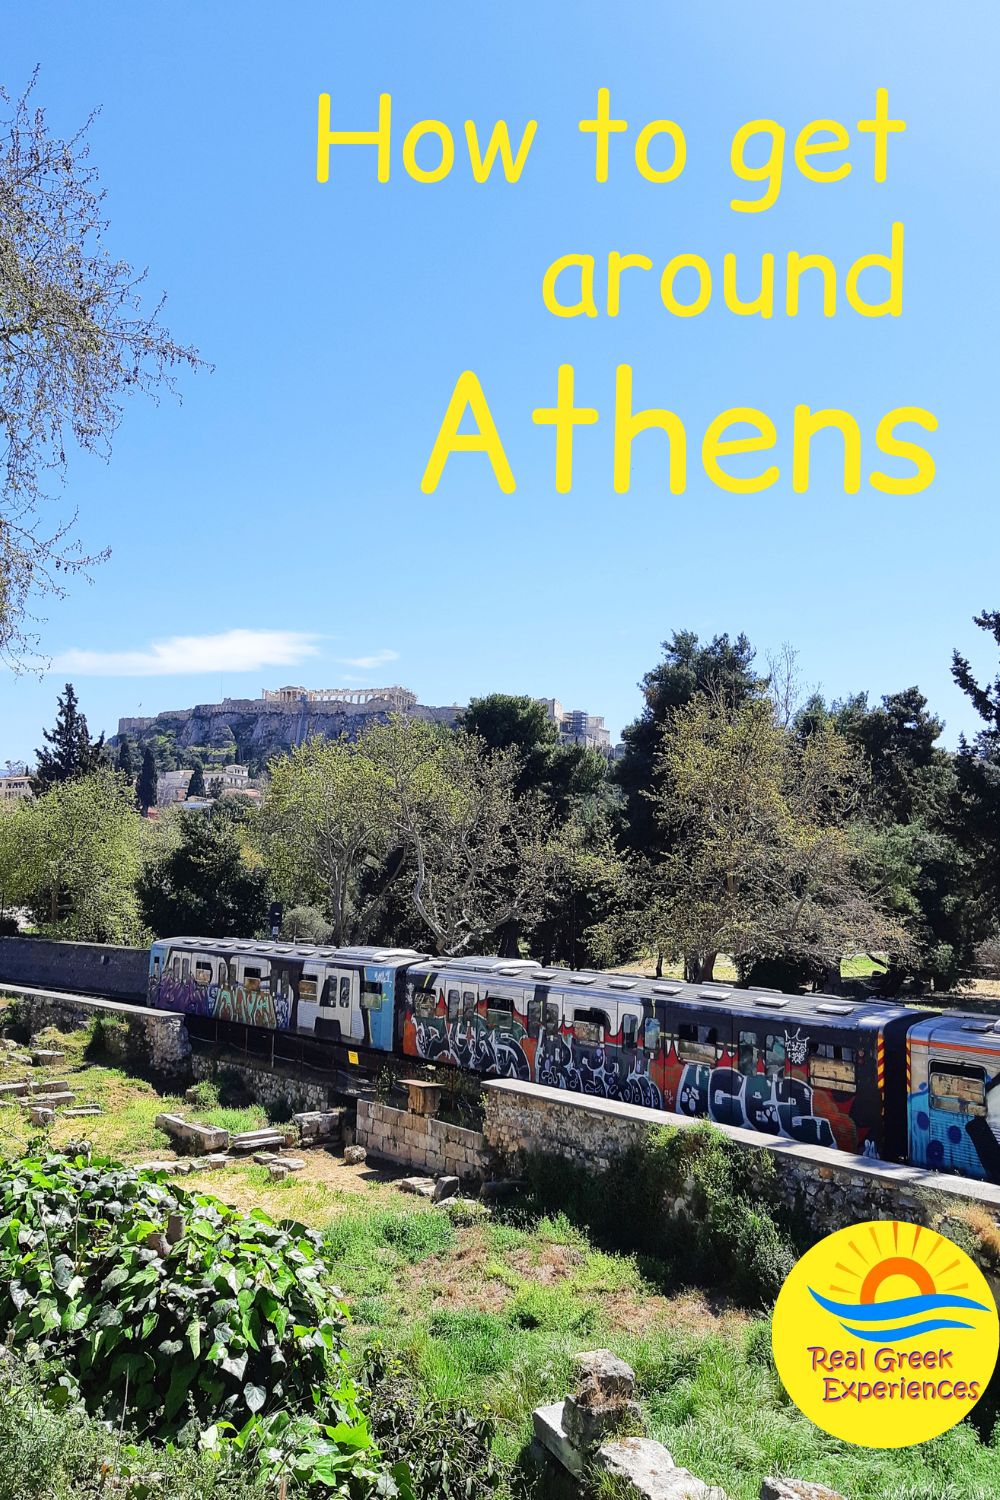 Best ways to get around Athens Greece